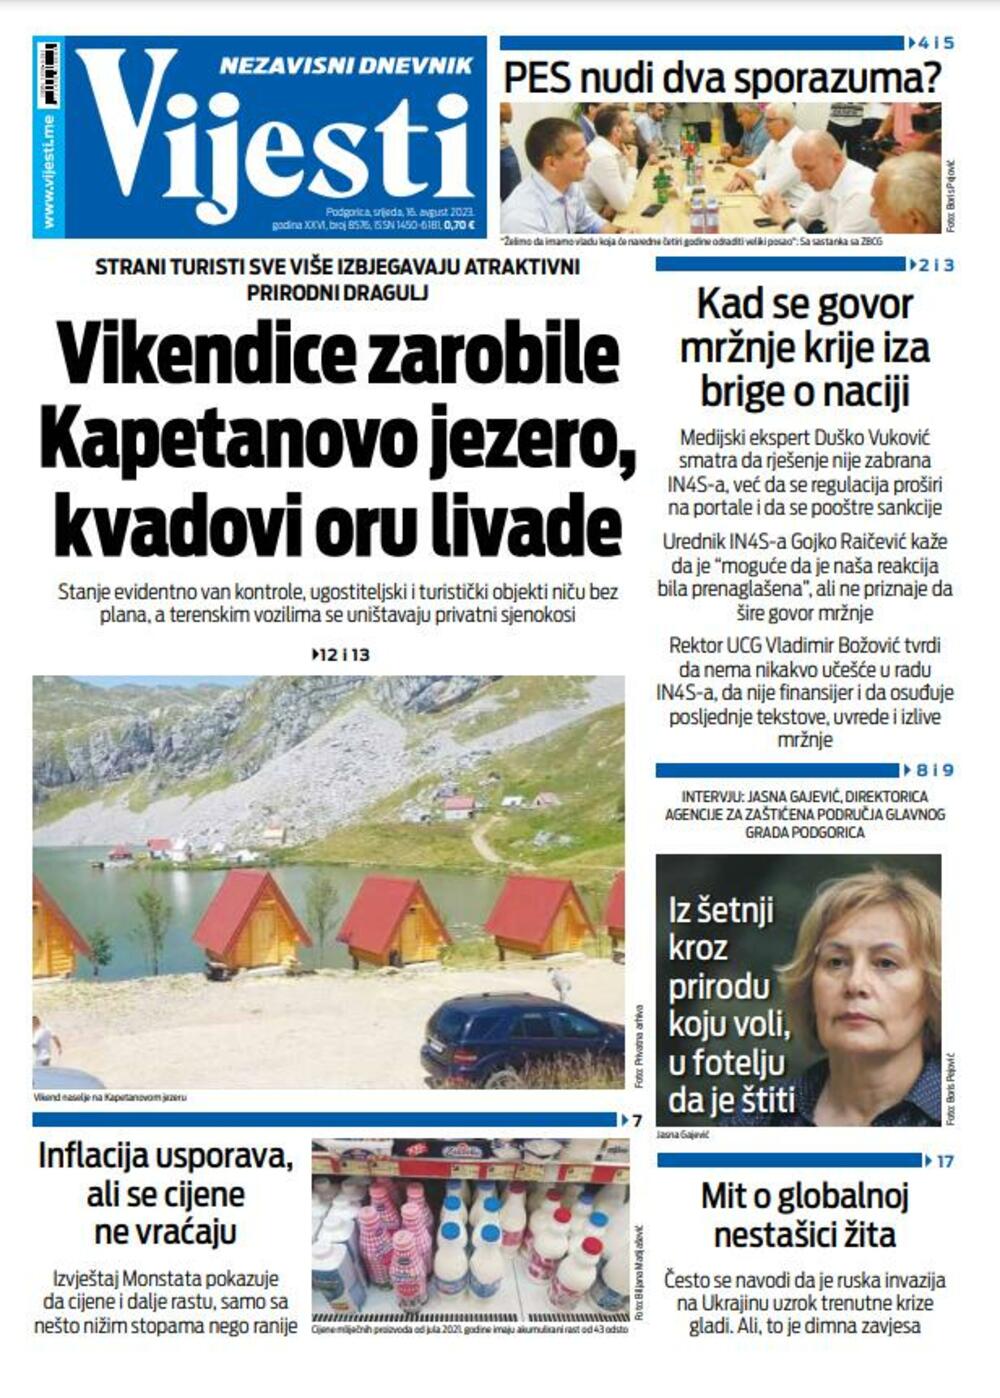 Naslovna strana "Vijesti" za 16. avgust 2023., Foto: Vijesti